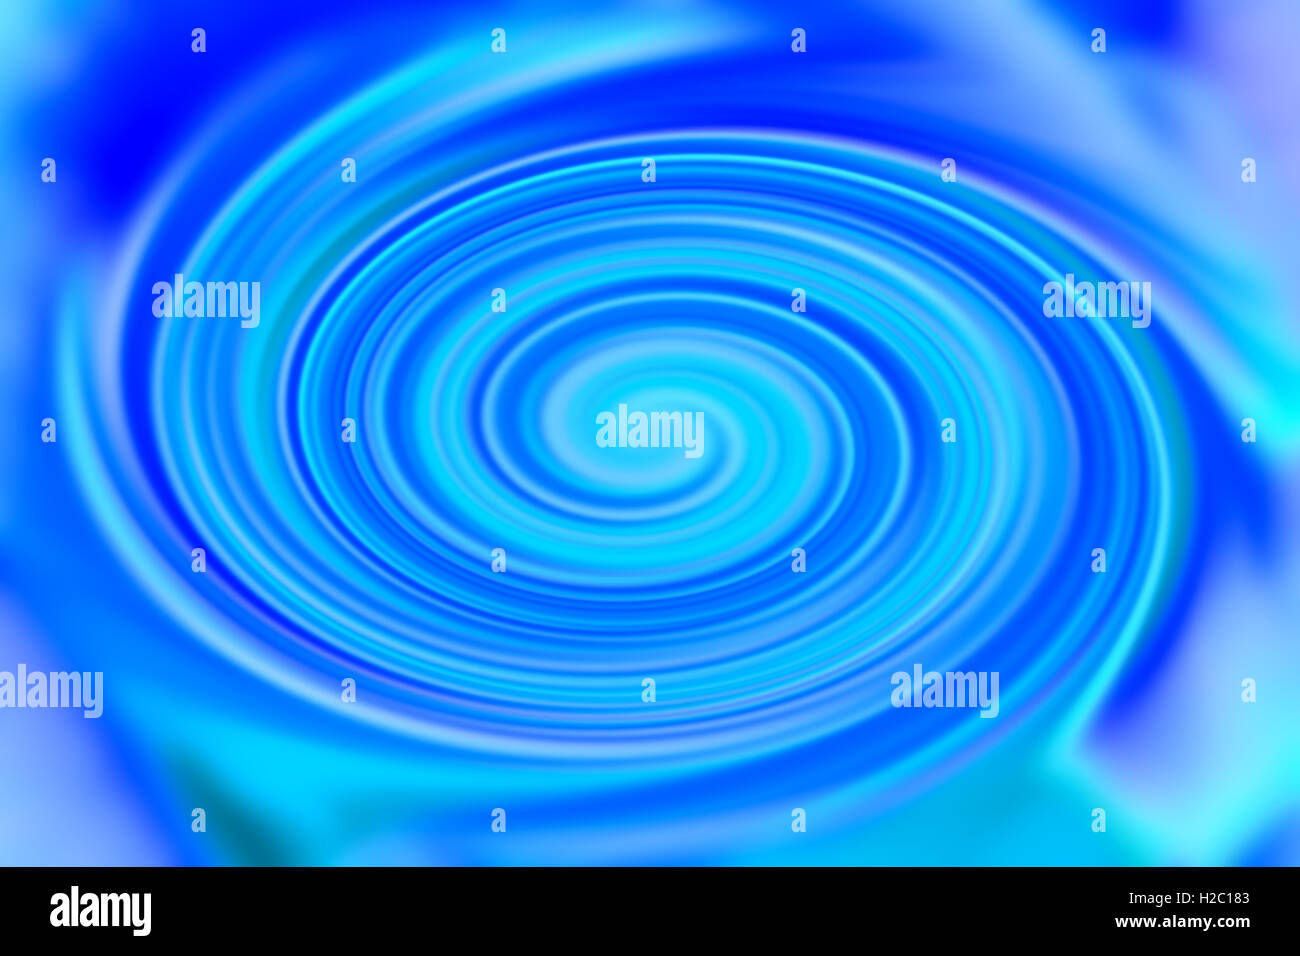 Abbildung Hintergrund verdreht in einem Kreis von blauen Linien Stockfoto